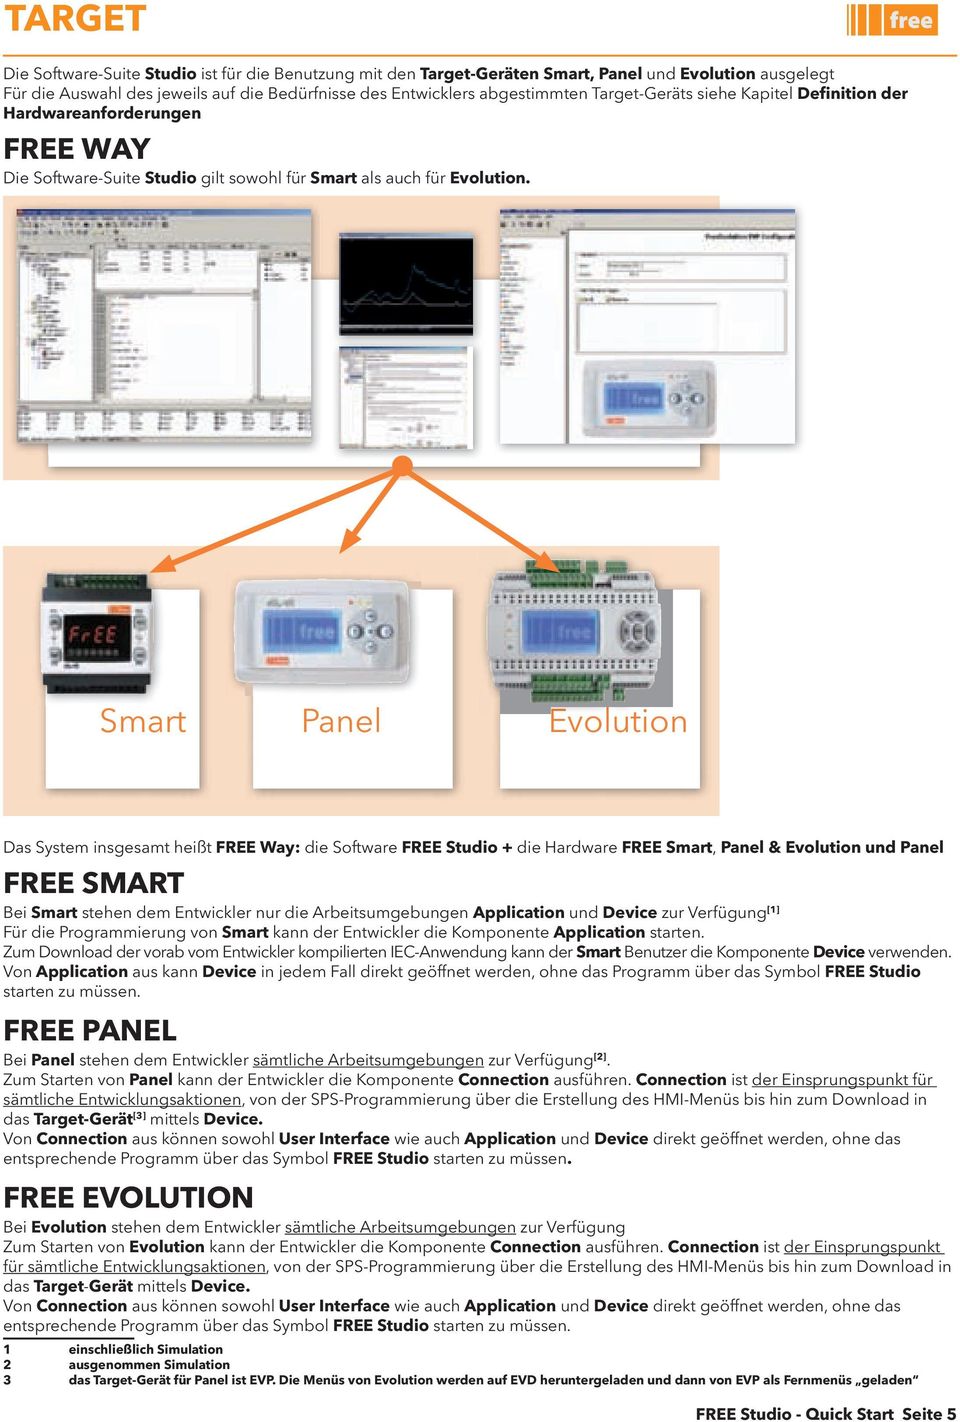 smart panel evolution Das system insgesamt heißt FREE way: die software FREE Studio + die hardware FREE Smart, panel & Evolution und panel FREE SMaRt Bei Smart stehen dem entwickler nur die